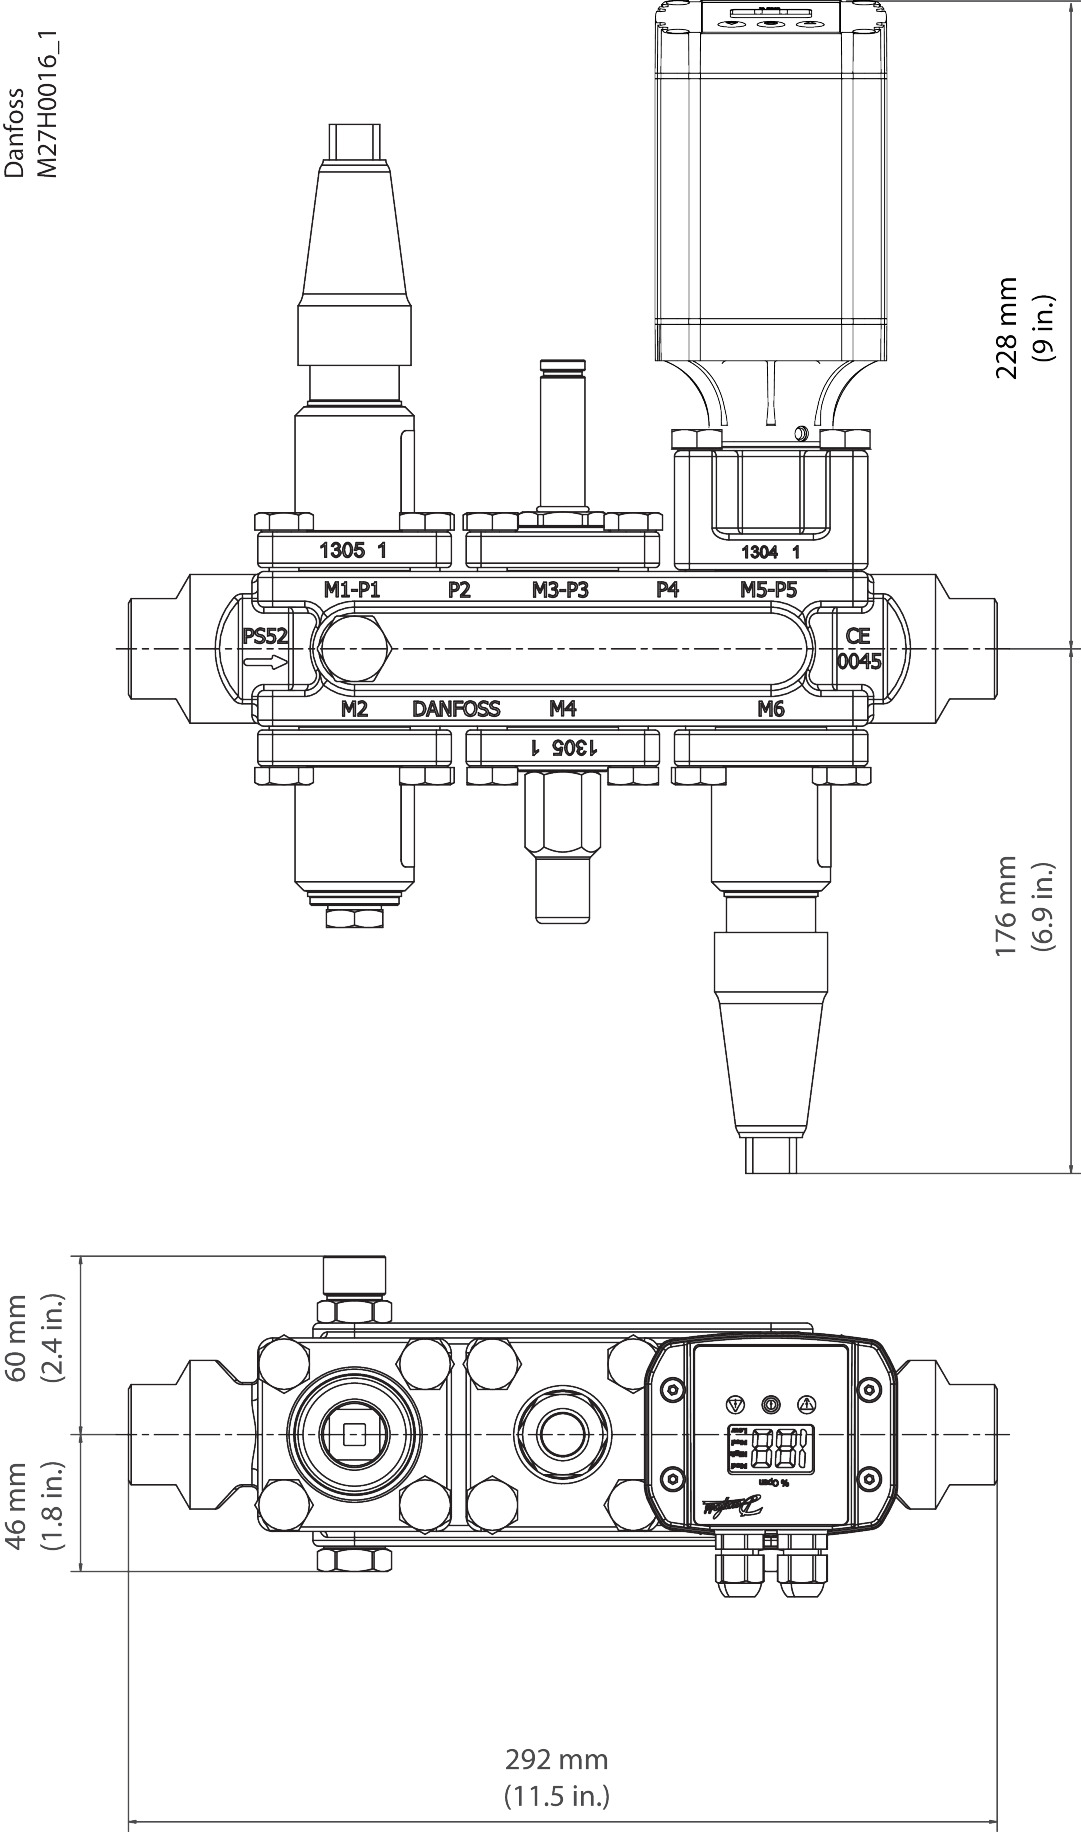 IMG103886495387_preview.jpg | ICF 20 — многофункциональные клапанные станции Данфосс (Danfoss) | официальный сайт Danfoss Россия